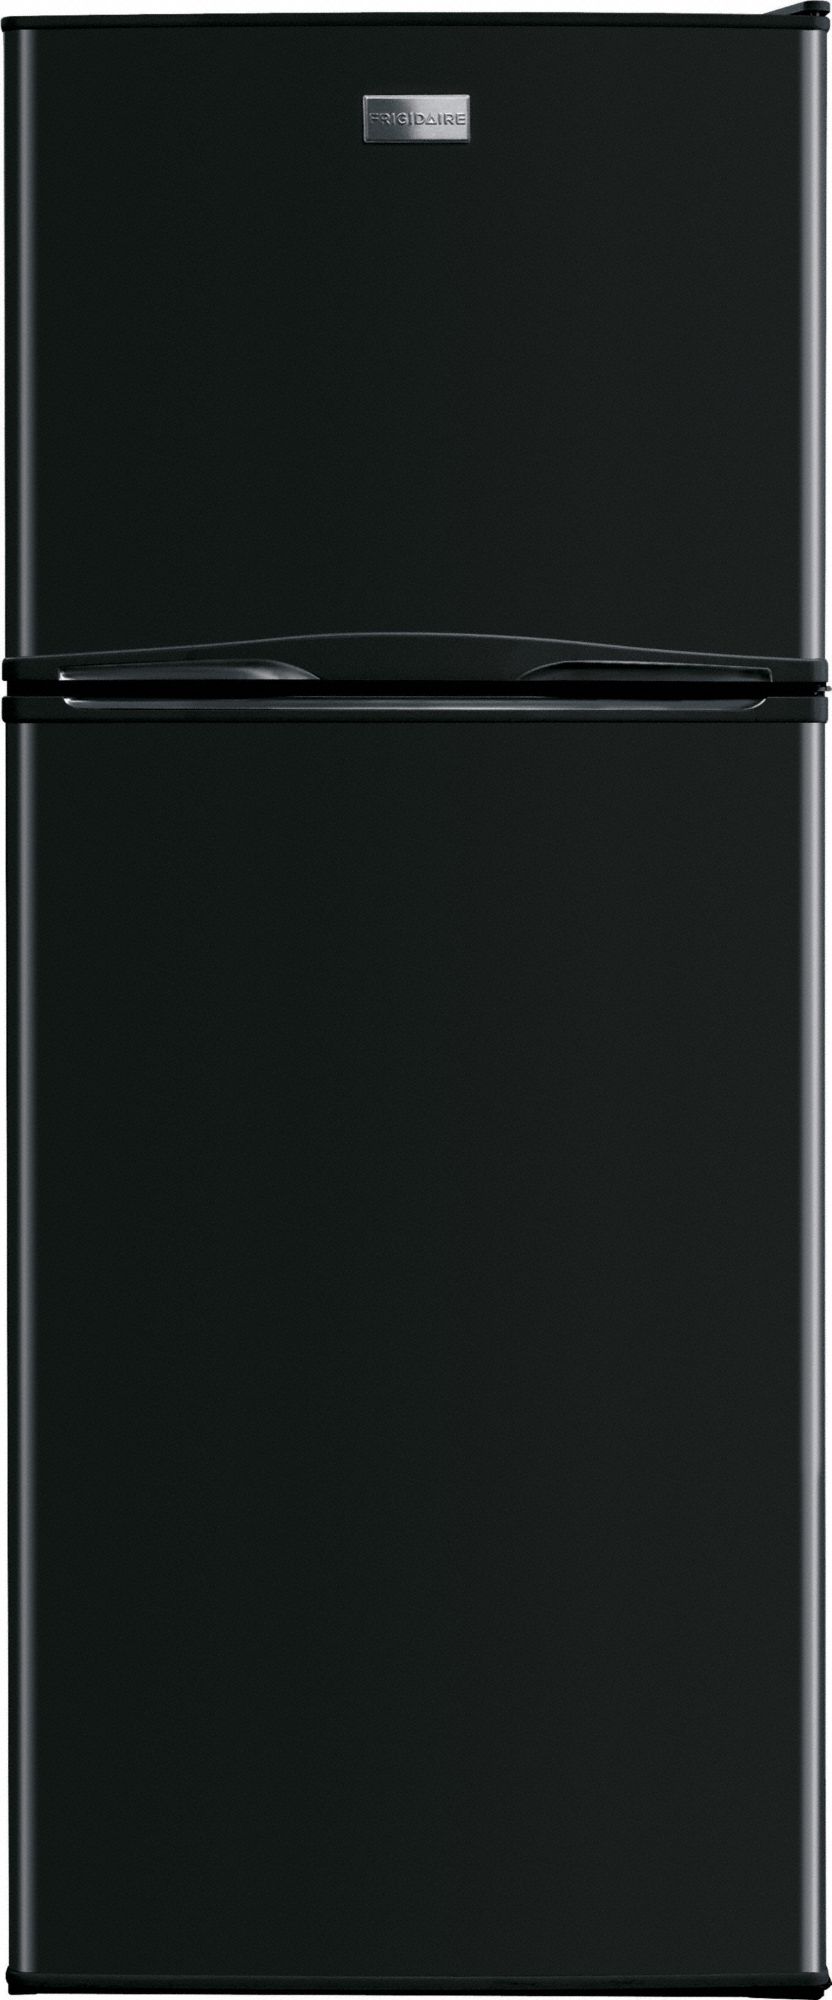 FRIGIDAIRE Top-Freezer Refrigerator: Black, 10.1 cu ft Total Capacity ...